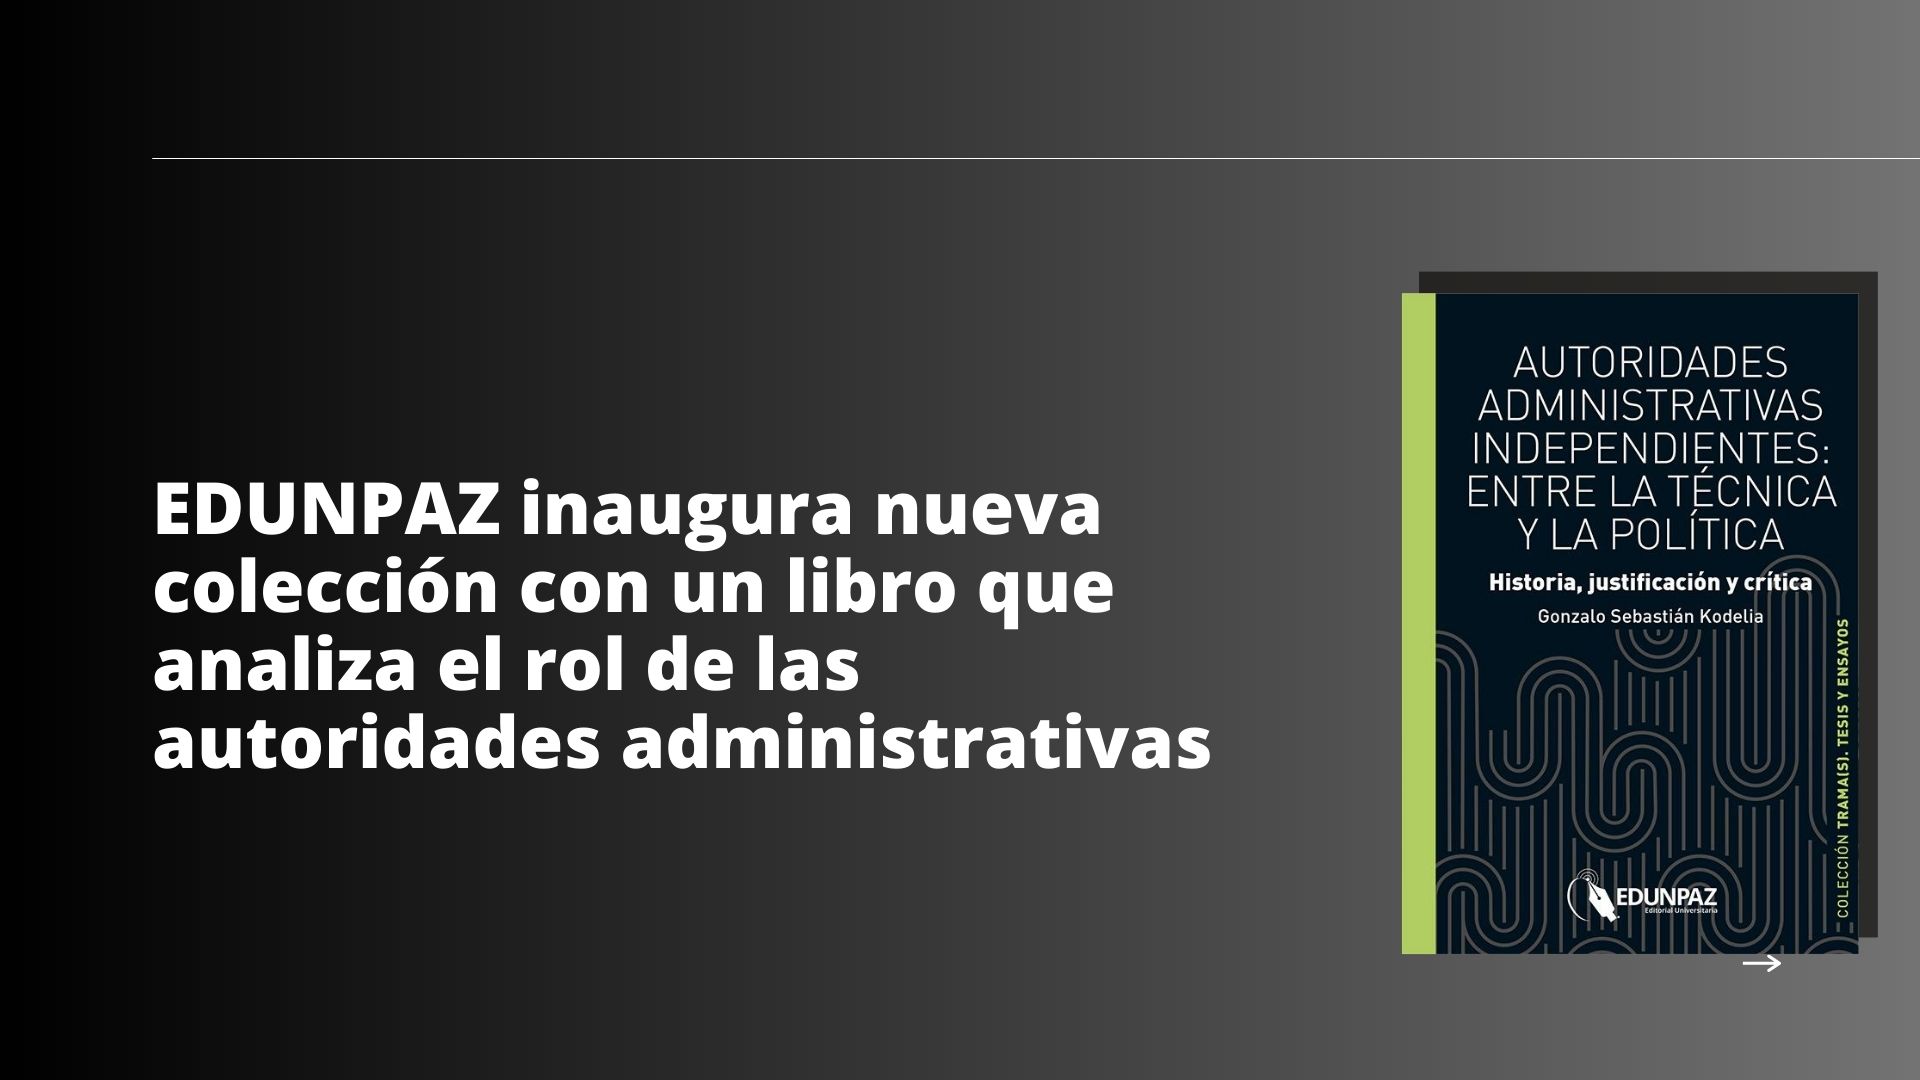 EDUNPAZ inaugura nueva colección con un libro que analiza el rol de las autoridades administrativas